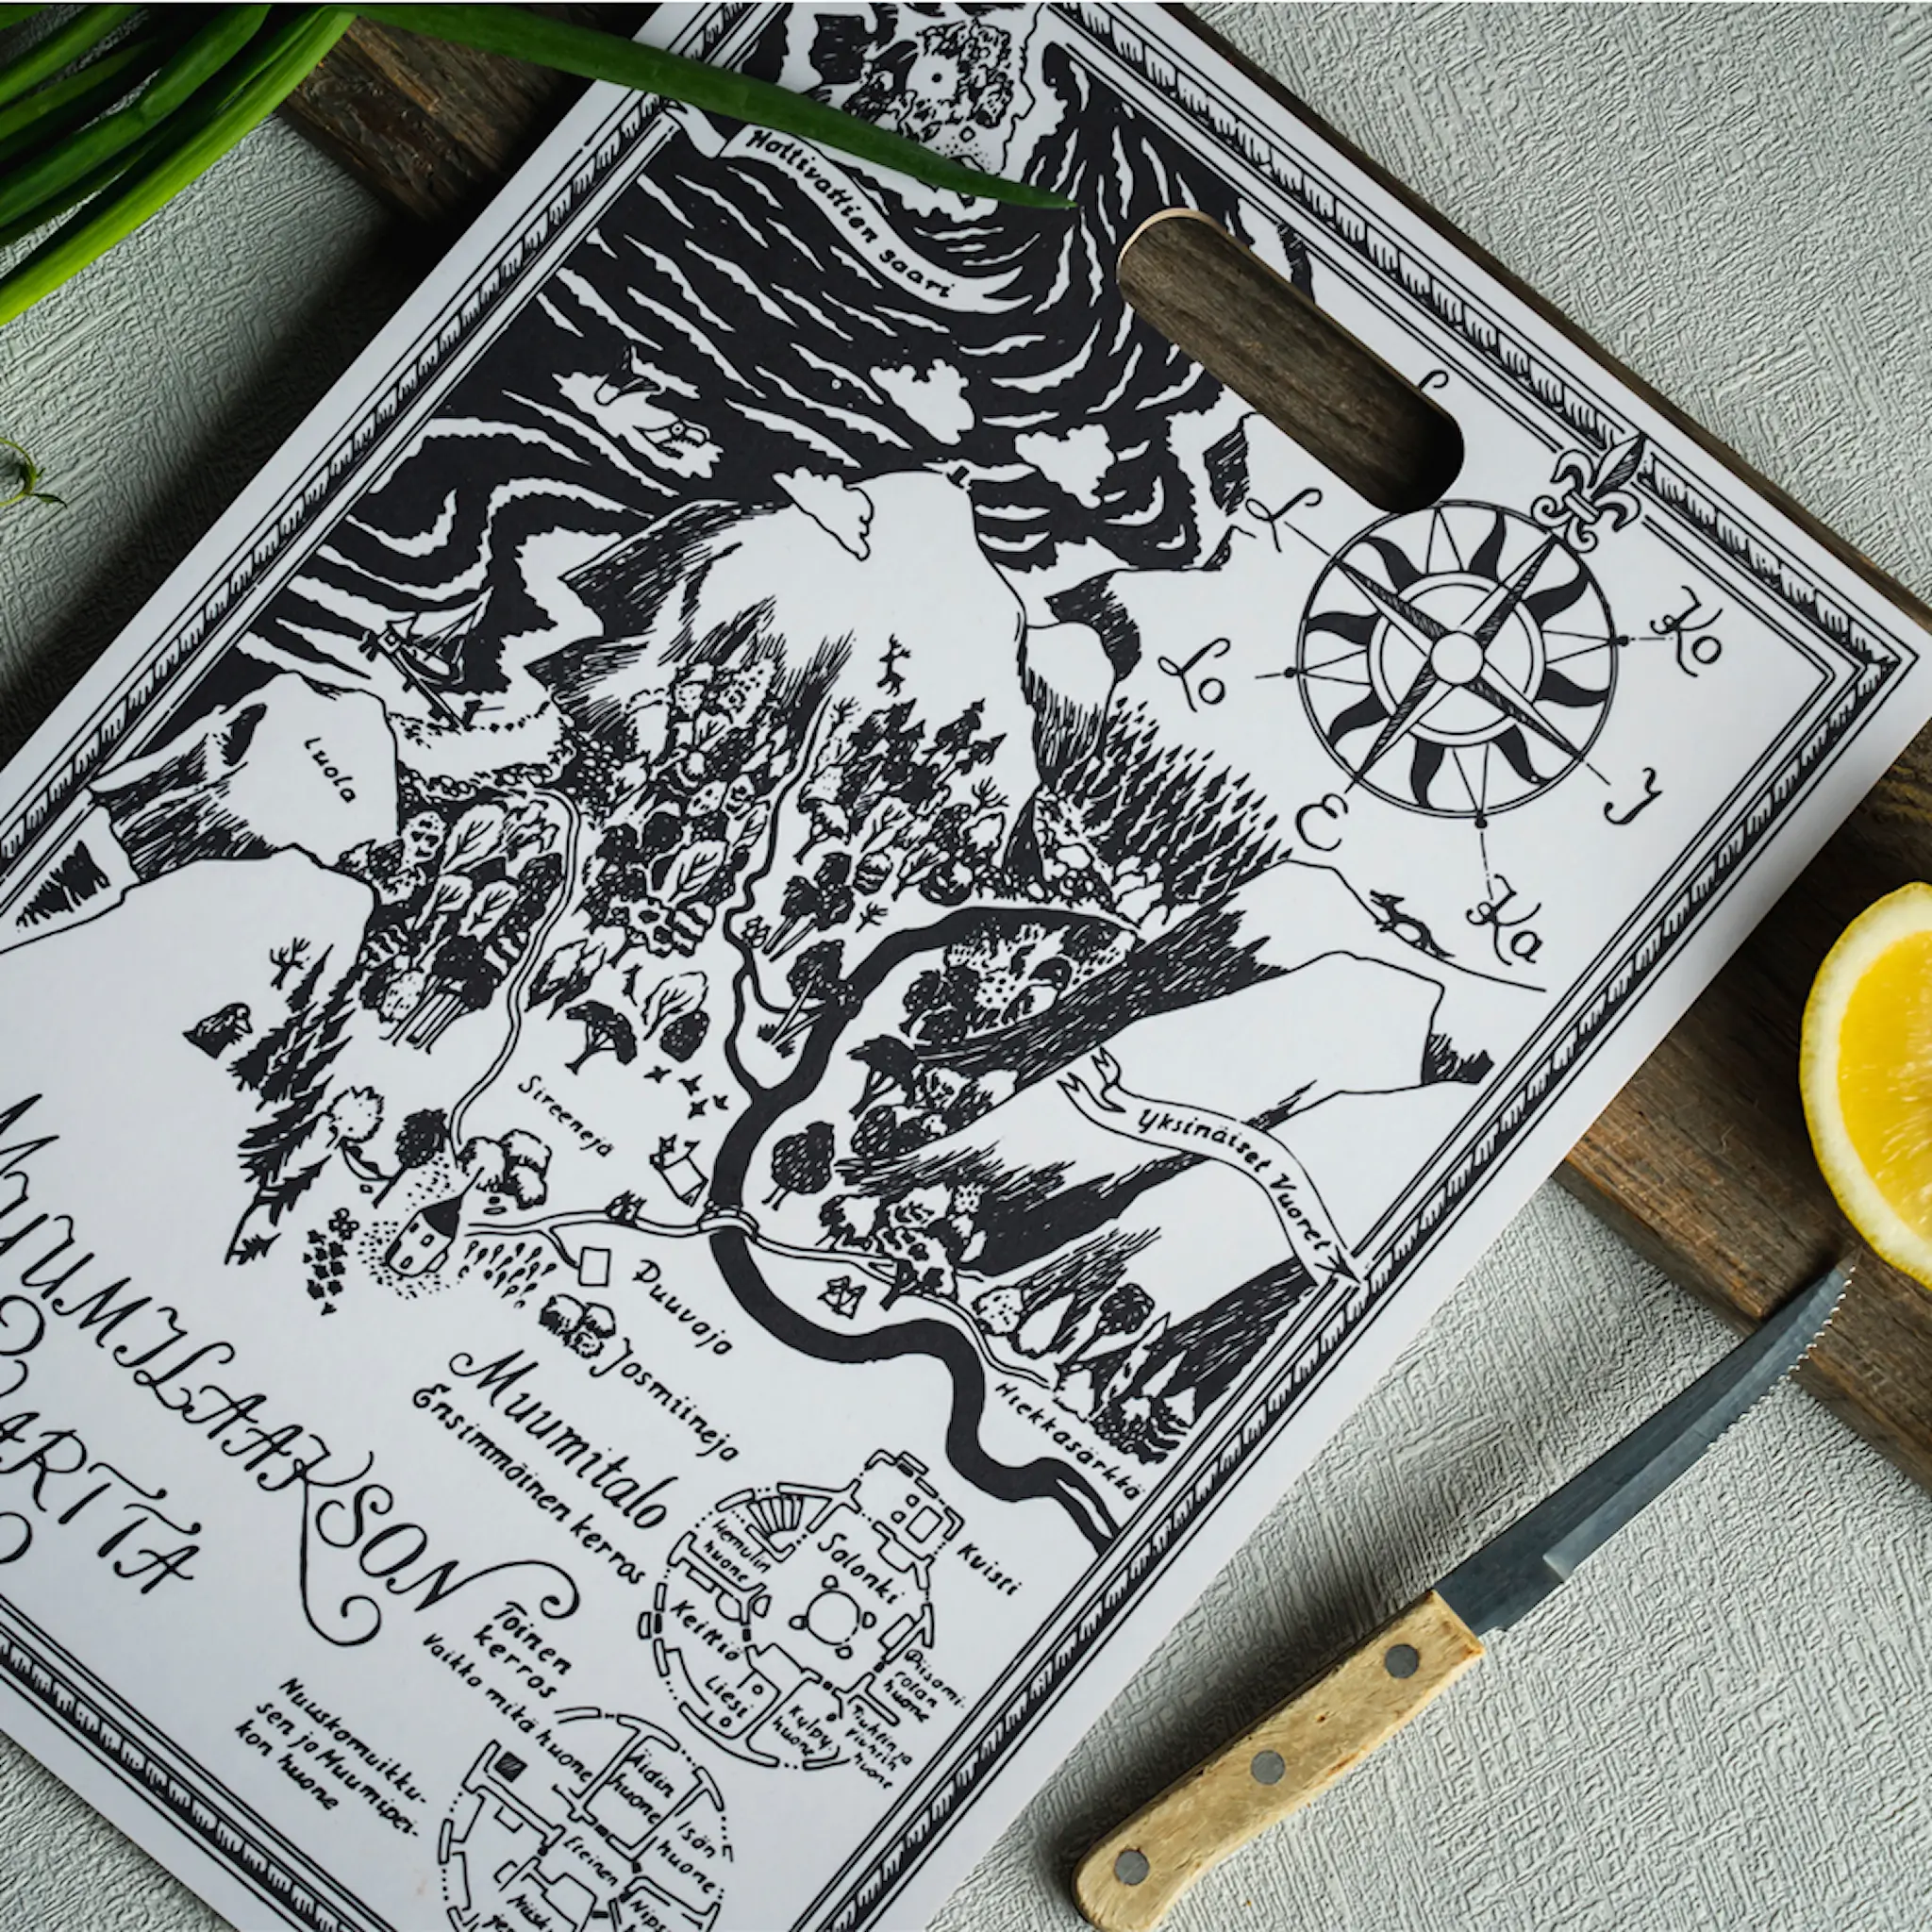 Muurla Mummi tosidig skjærebrett 30x43 cm Kartet